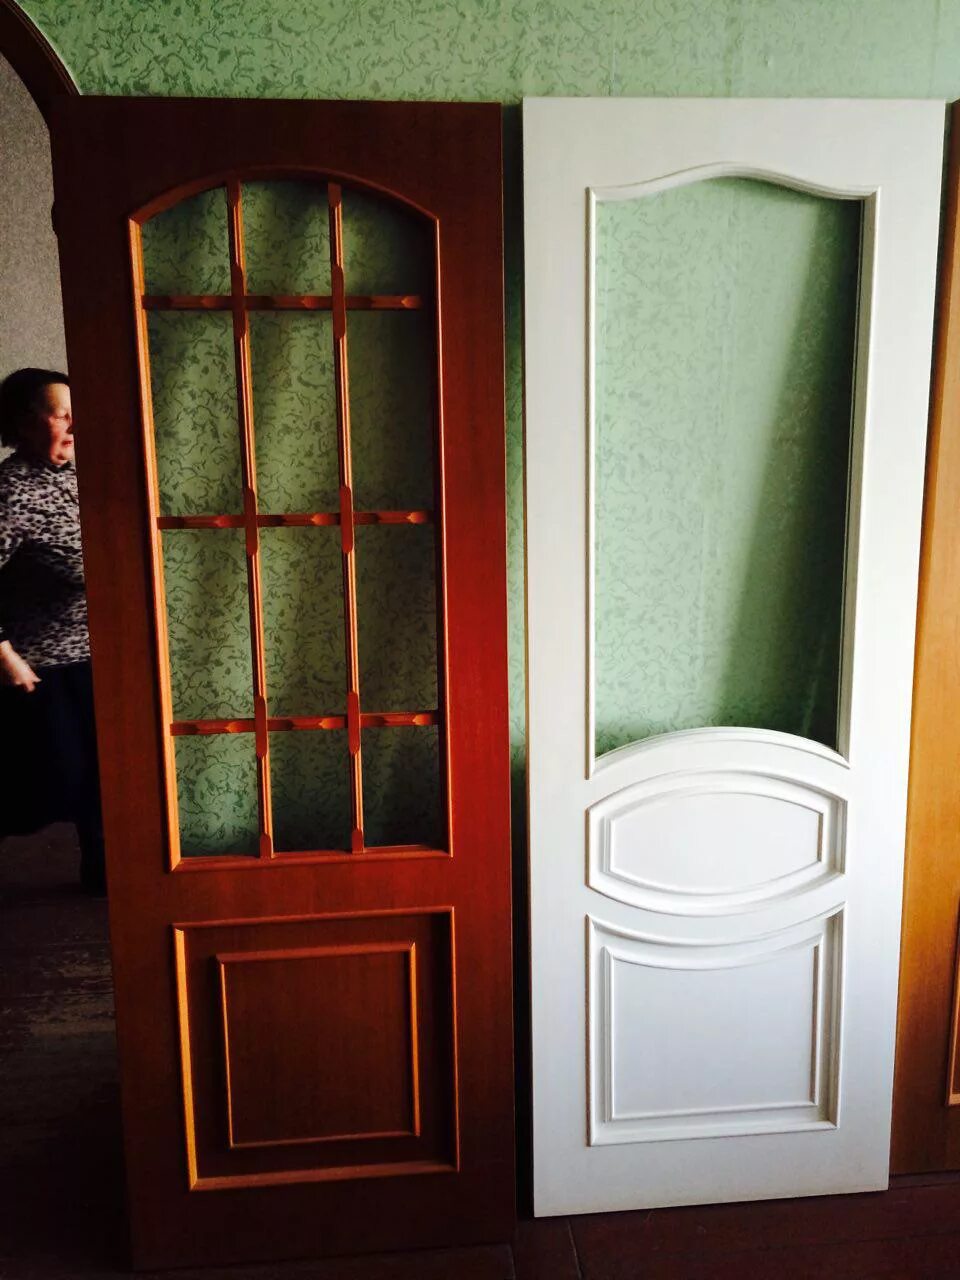 Покраска деревянных дверей. Перекраска деревянных дверей со стеклом. Перекрас дверей межкомнатных. Покраска дверей межкомнатных. Можно перекрасить межкомнатную дверь